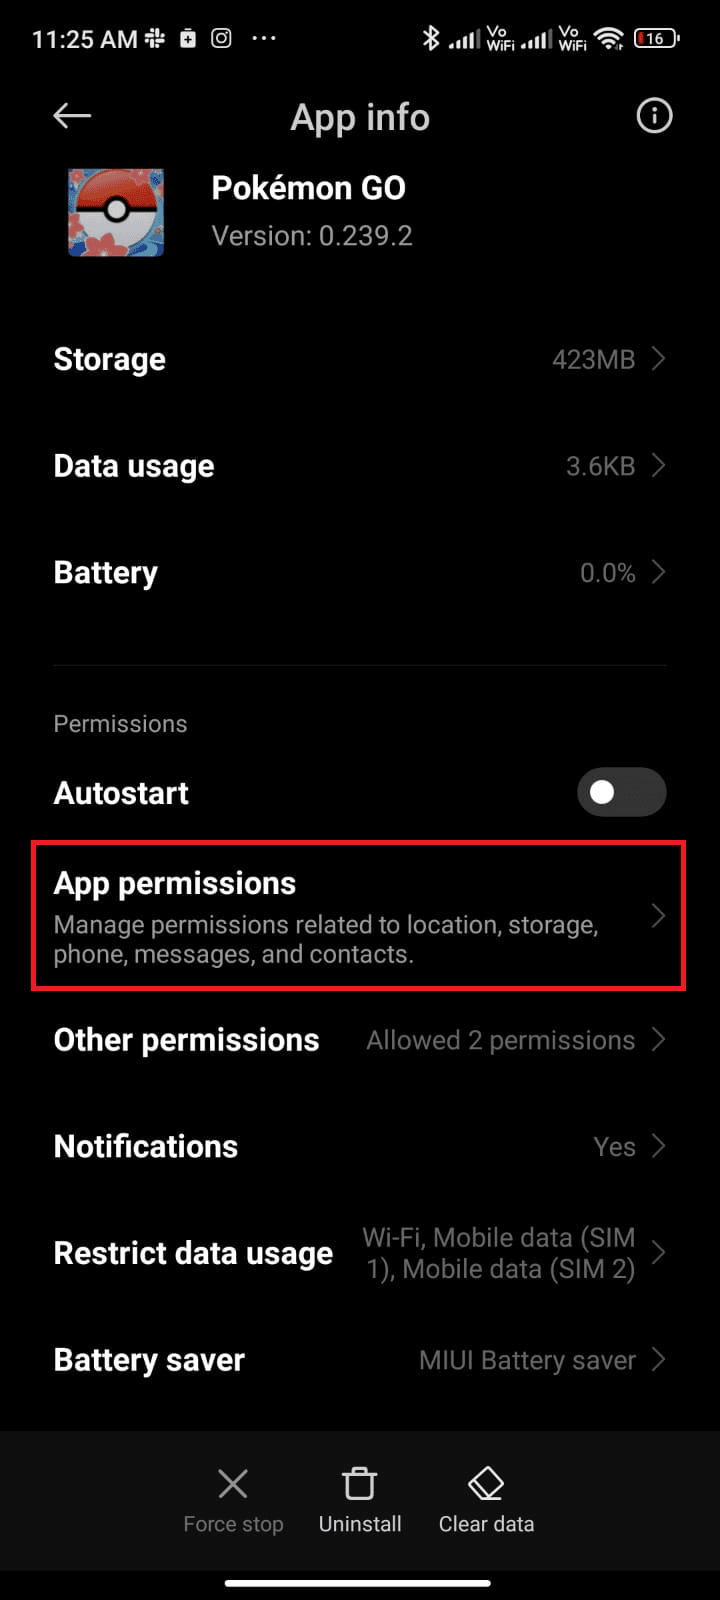 Now, tap App permissions